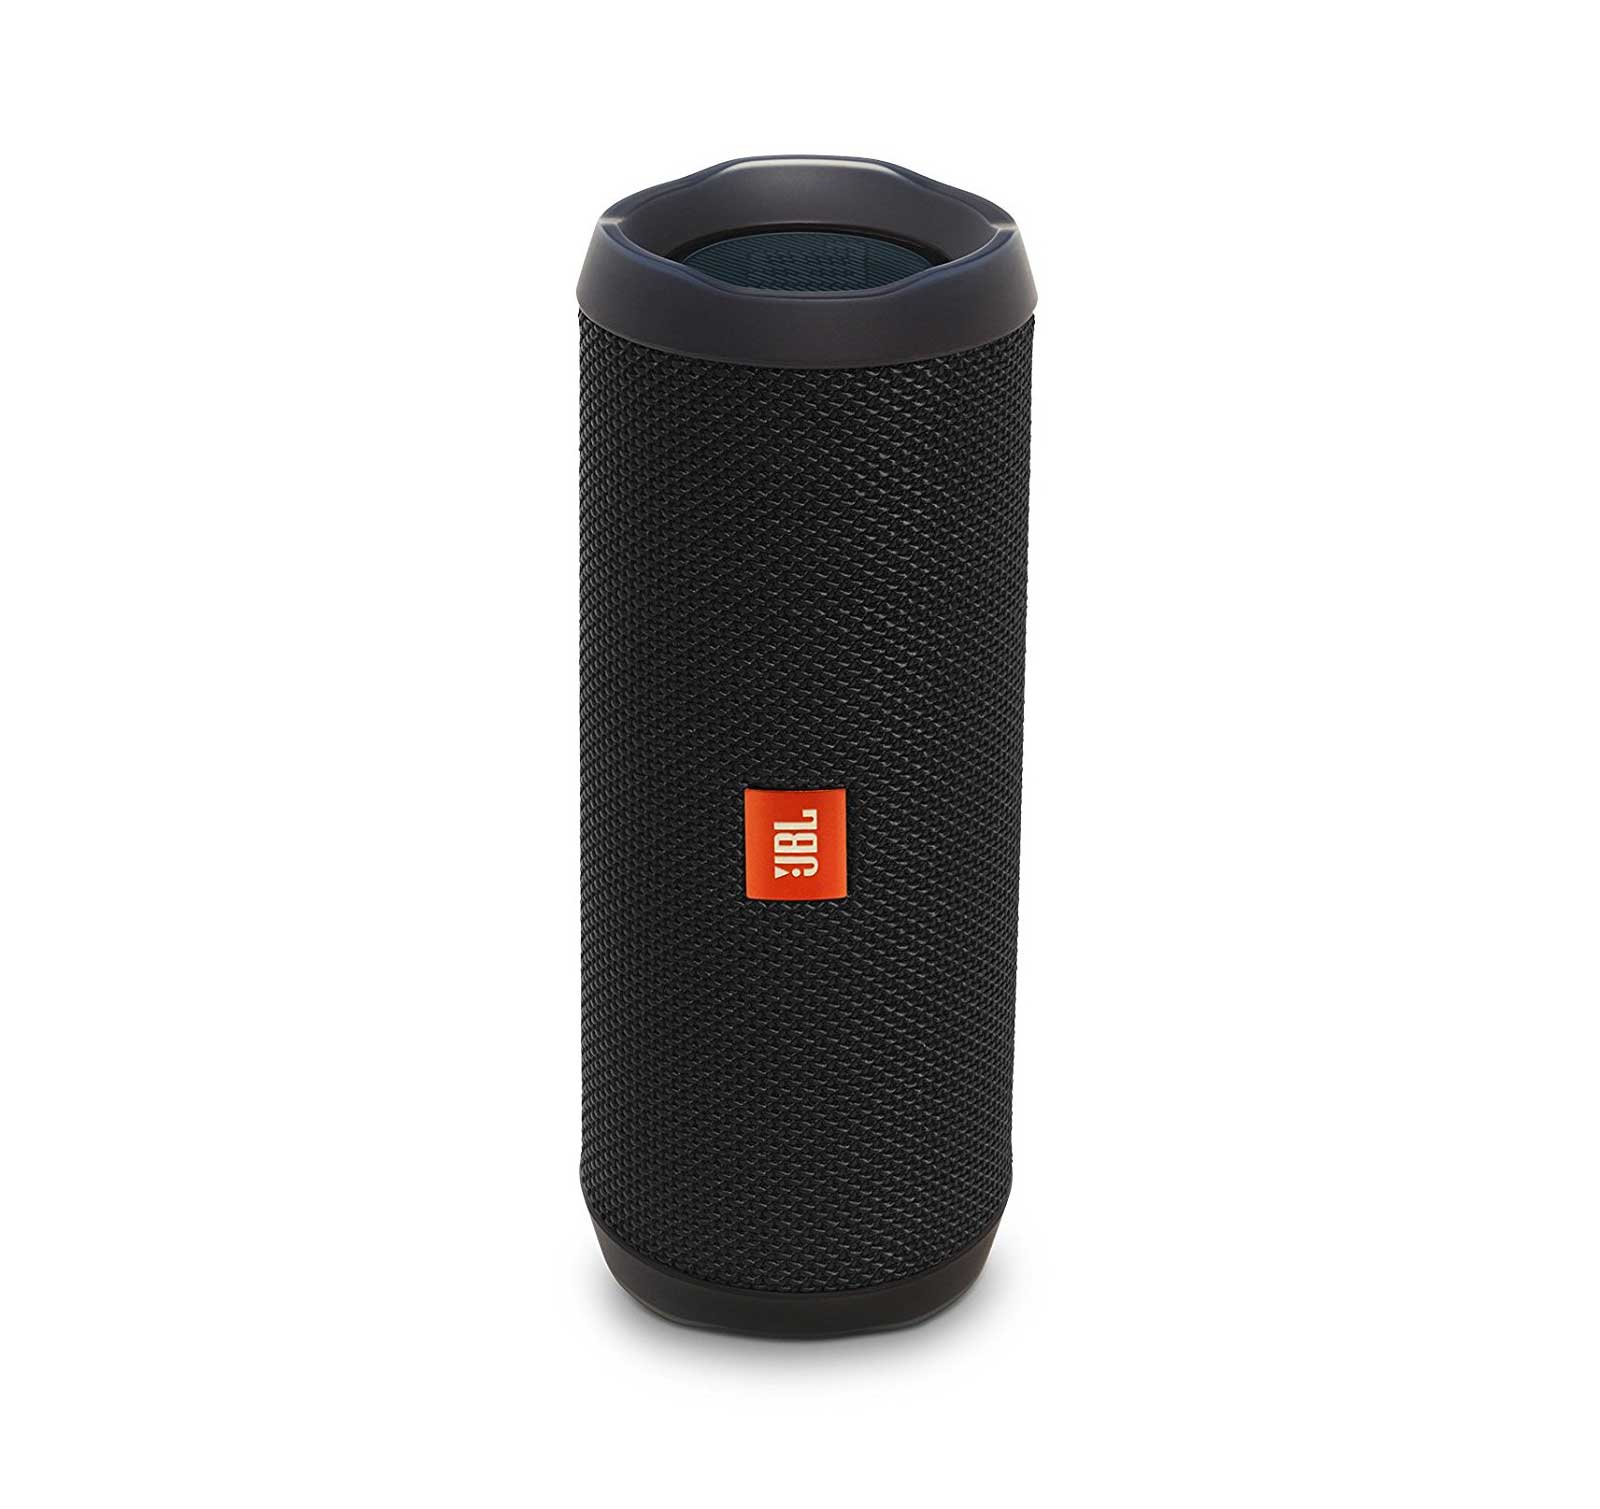 JBL Portable Bluetooth Speaker with Waterproof, Black, JBLFLIP4BLKAMx2 - image 4 of 4